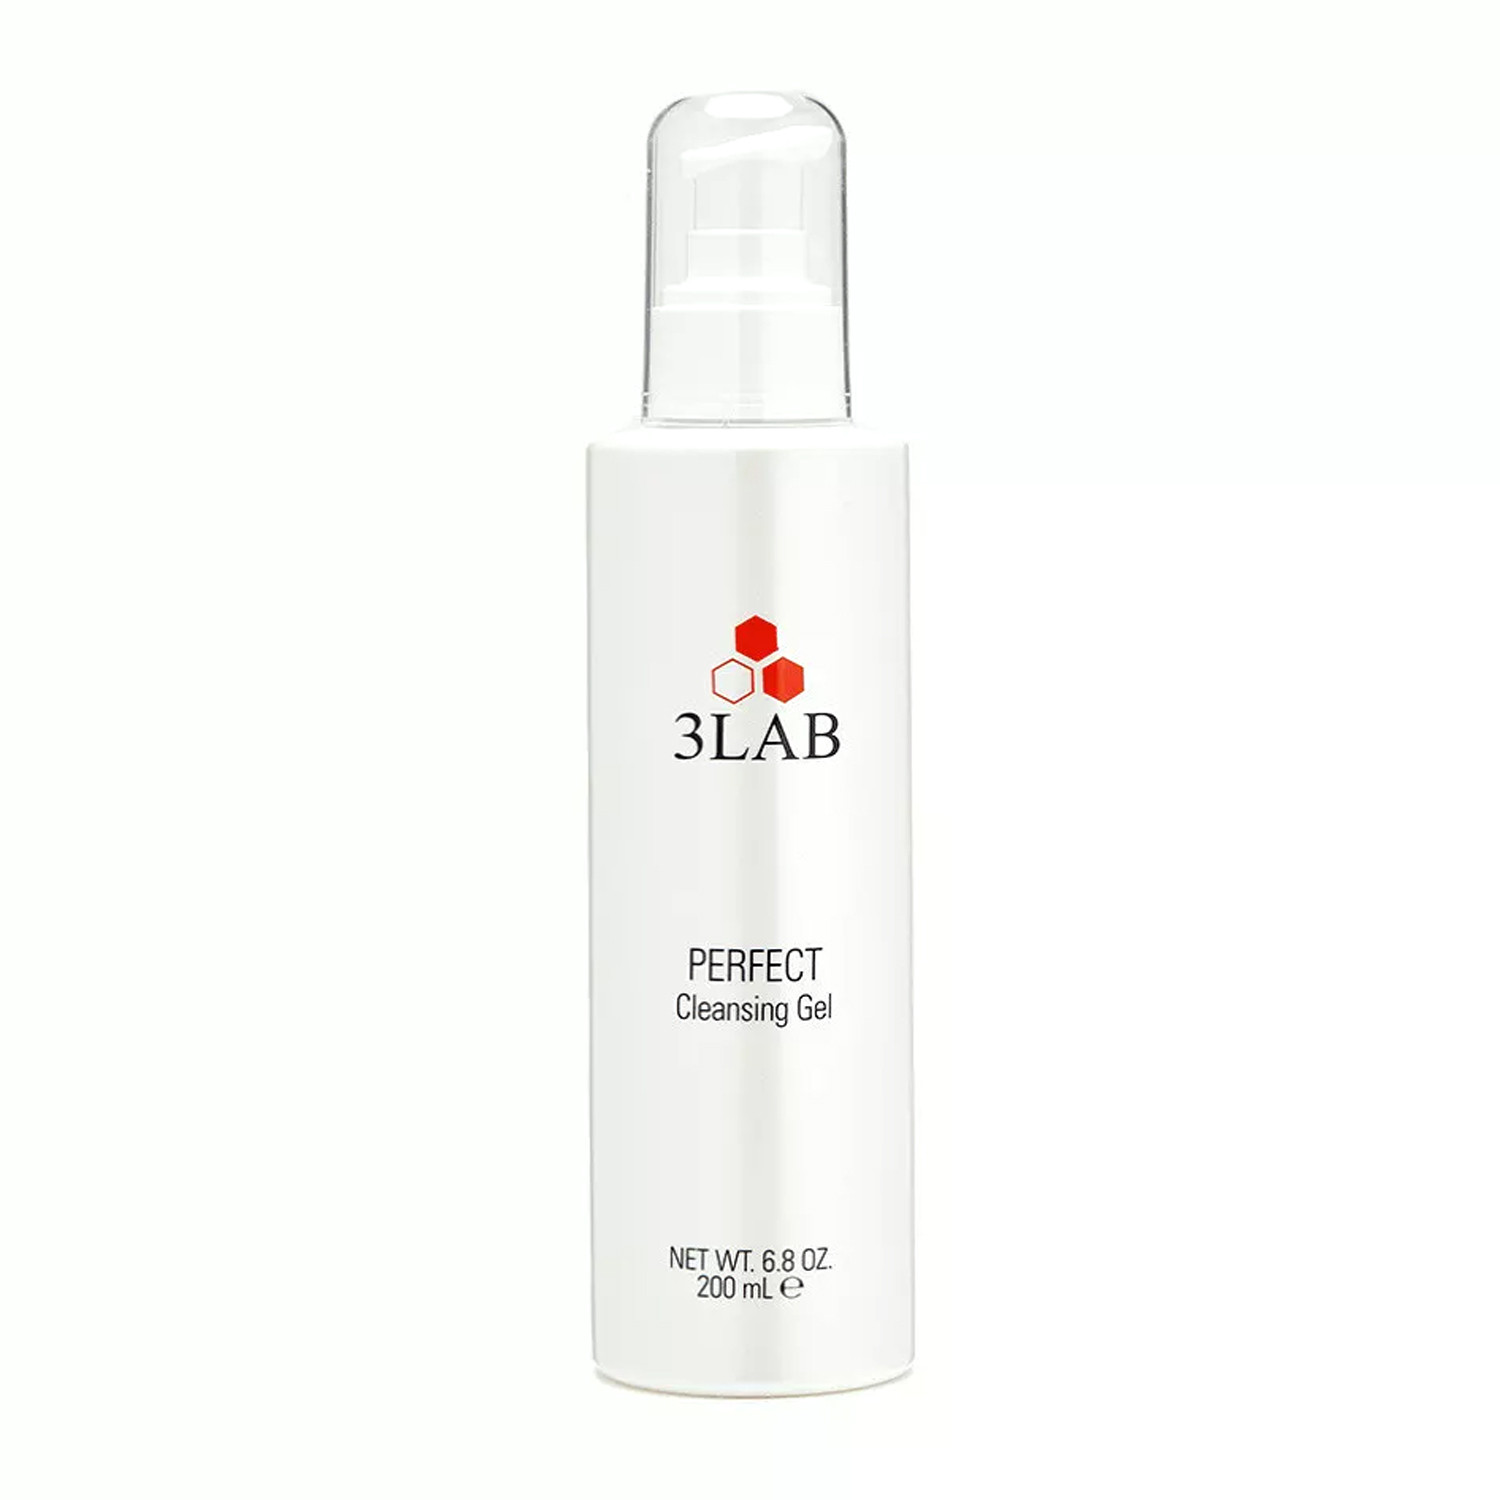 Отзывы о 3LAB Perfect Cleansing Gel Очищающий гель для лица